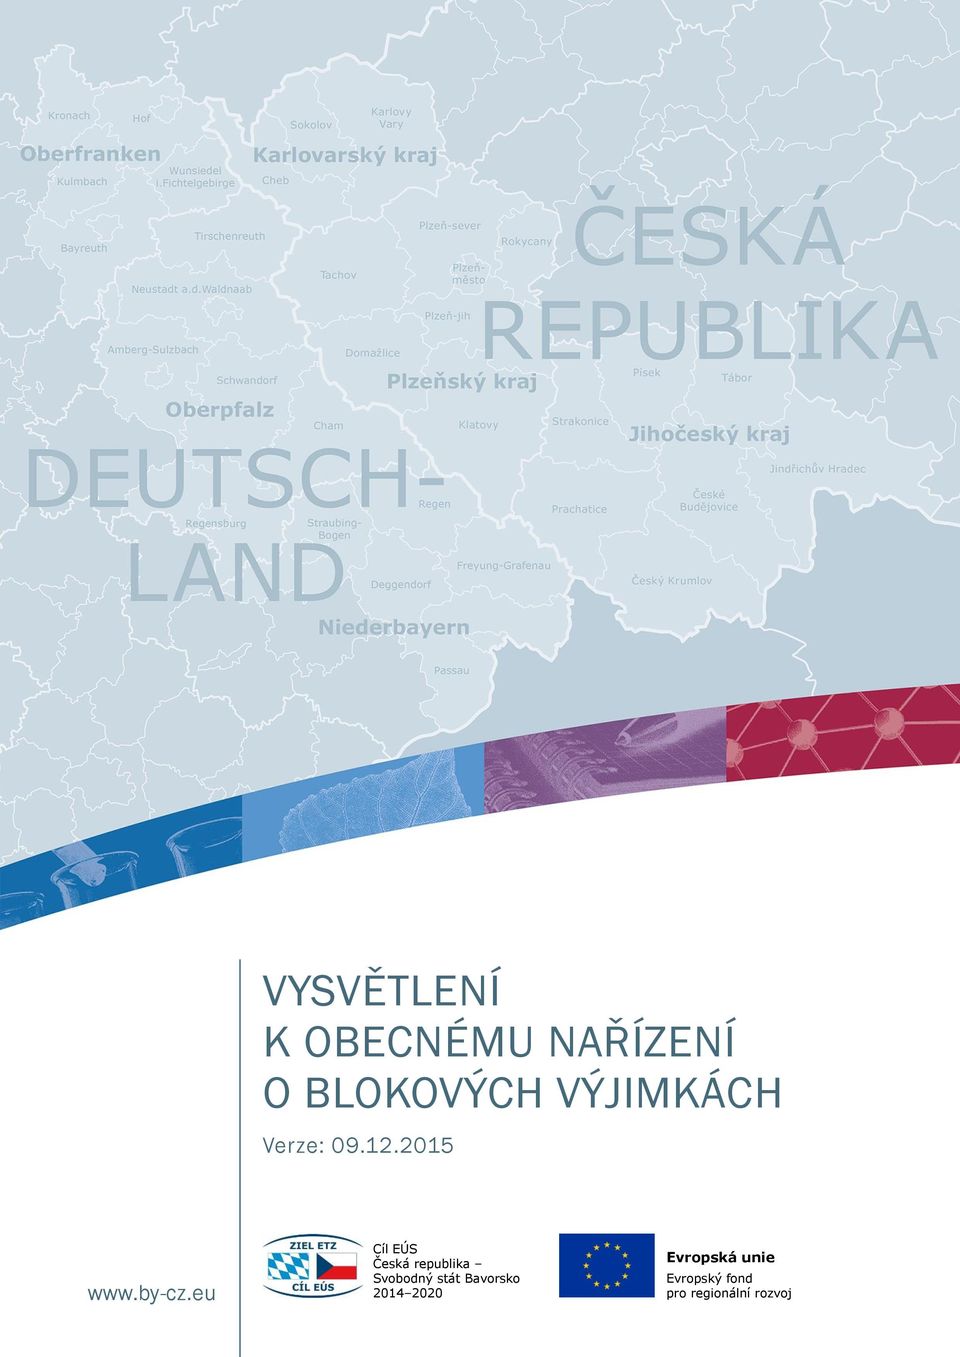 eu Cíl EÚS Česká republika Svobodný stát